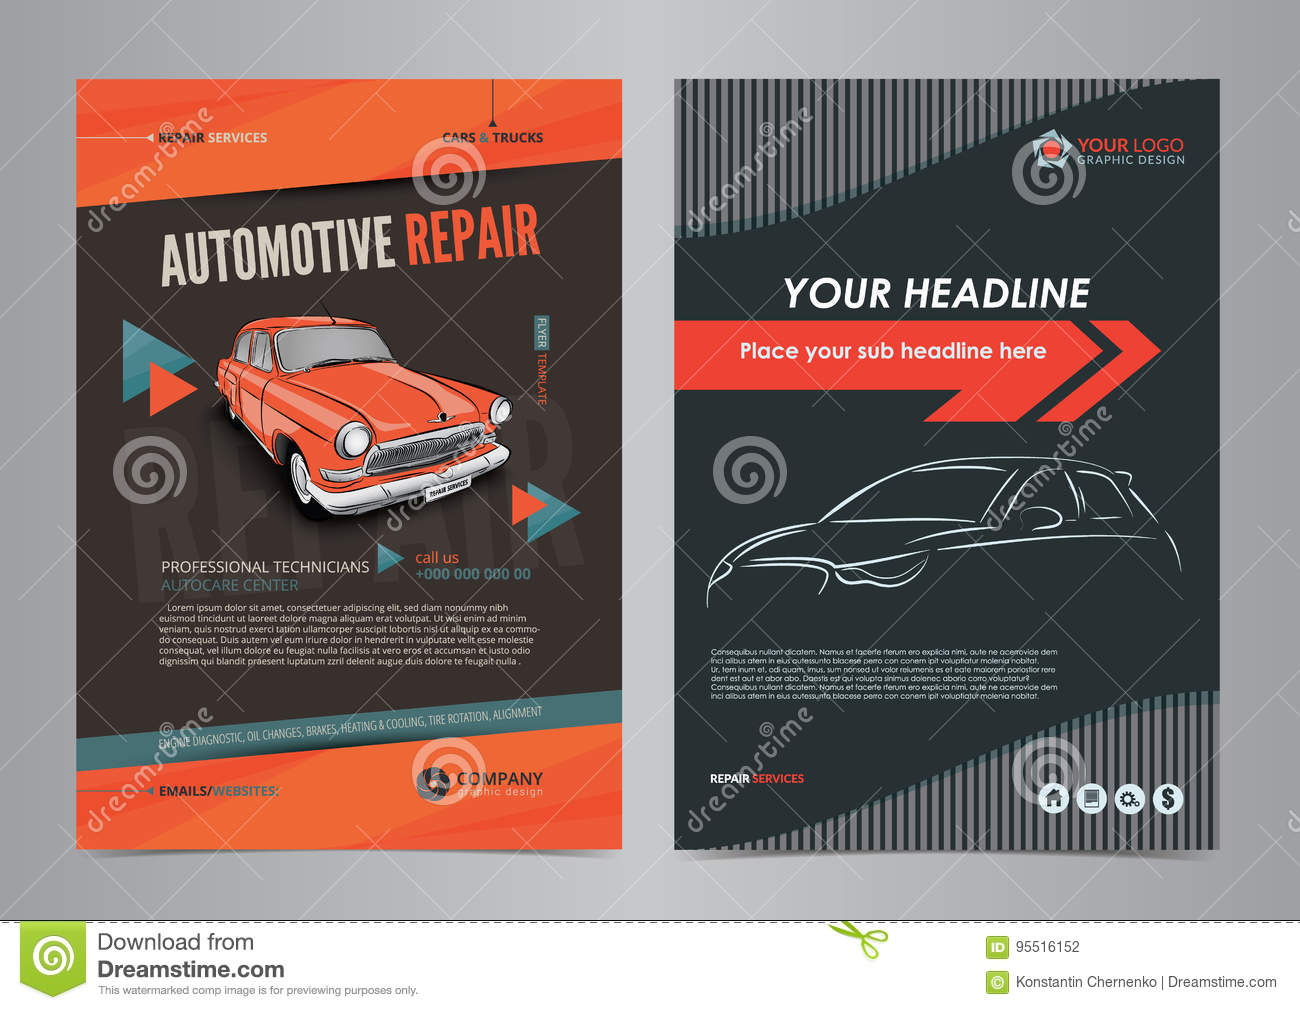 Auto Services Business Flyer Layout Templates, Automotive Repair  Regarding Auto Shop Flyer Template Intended For Auto Shop Flyer Template